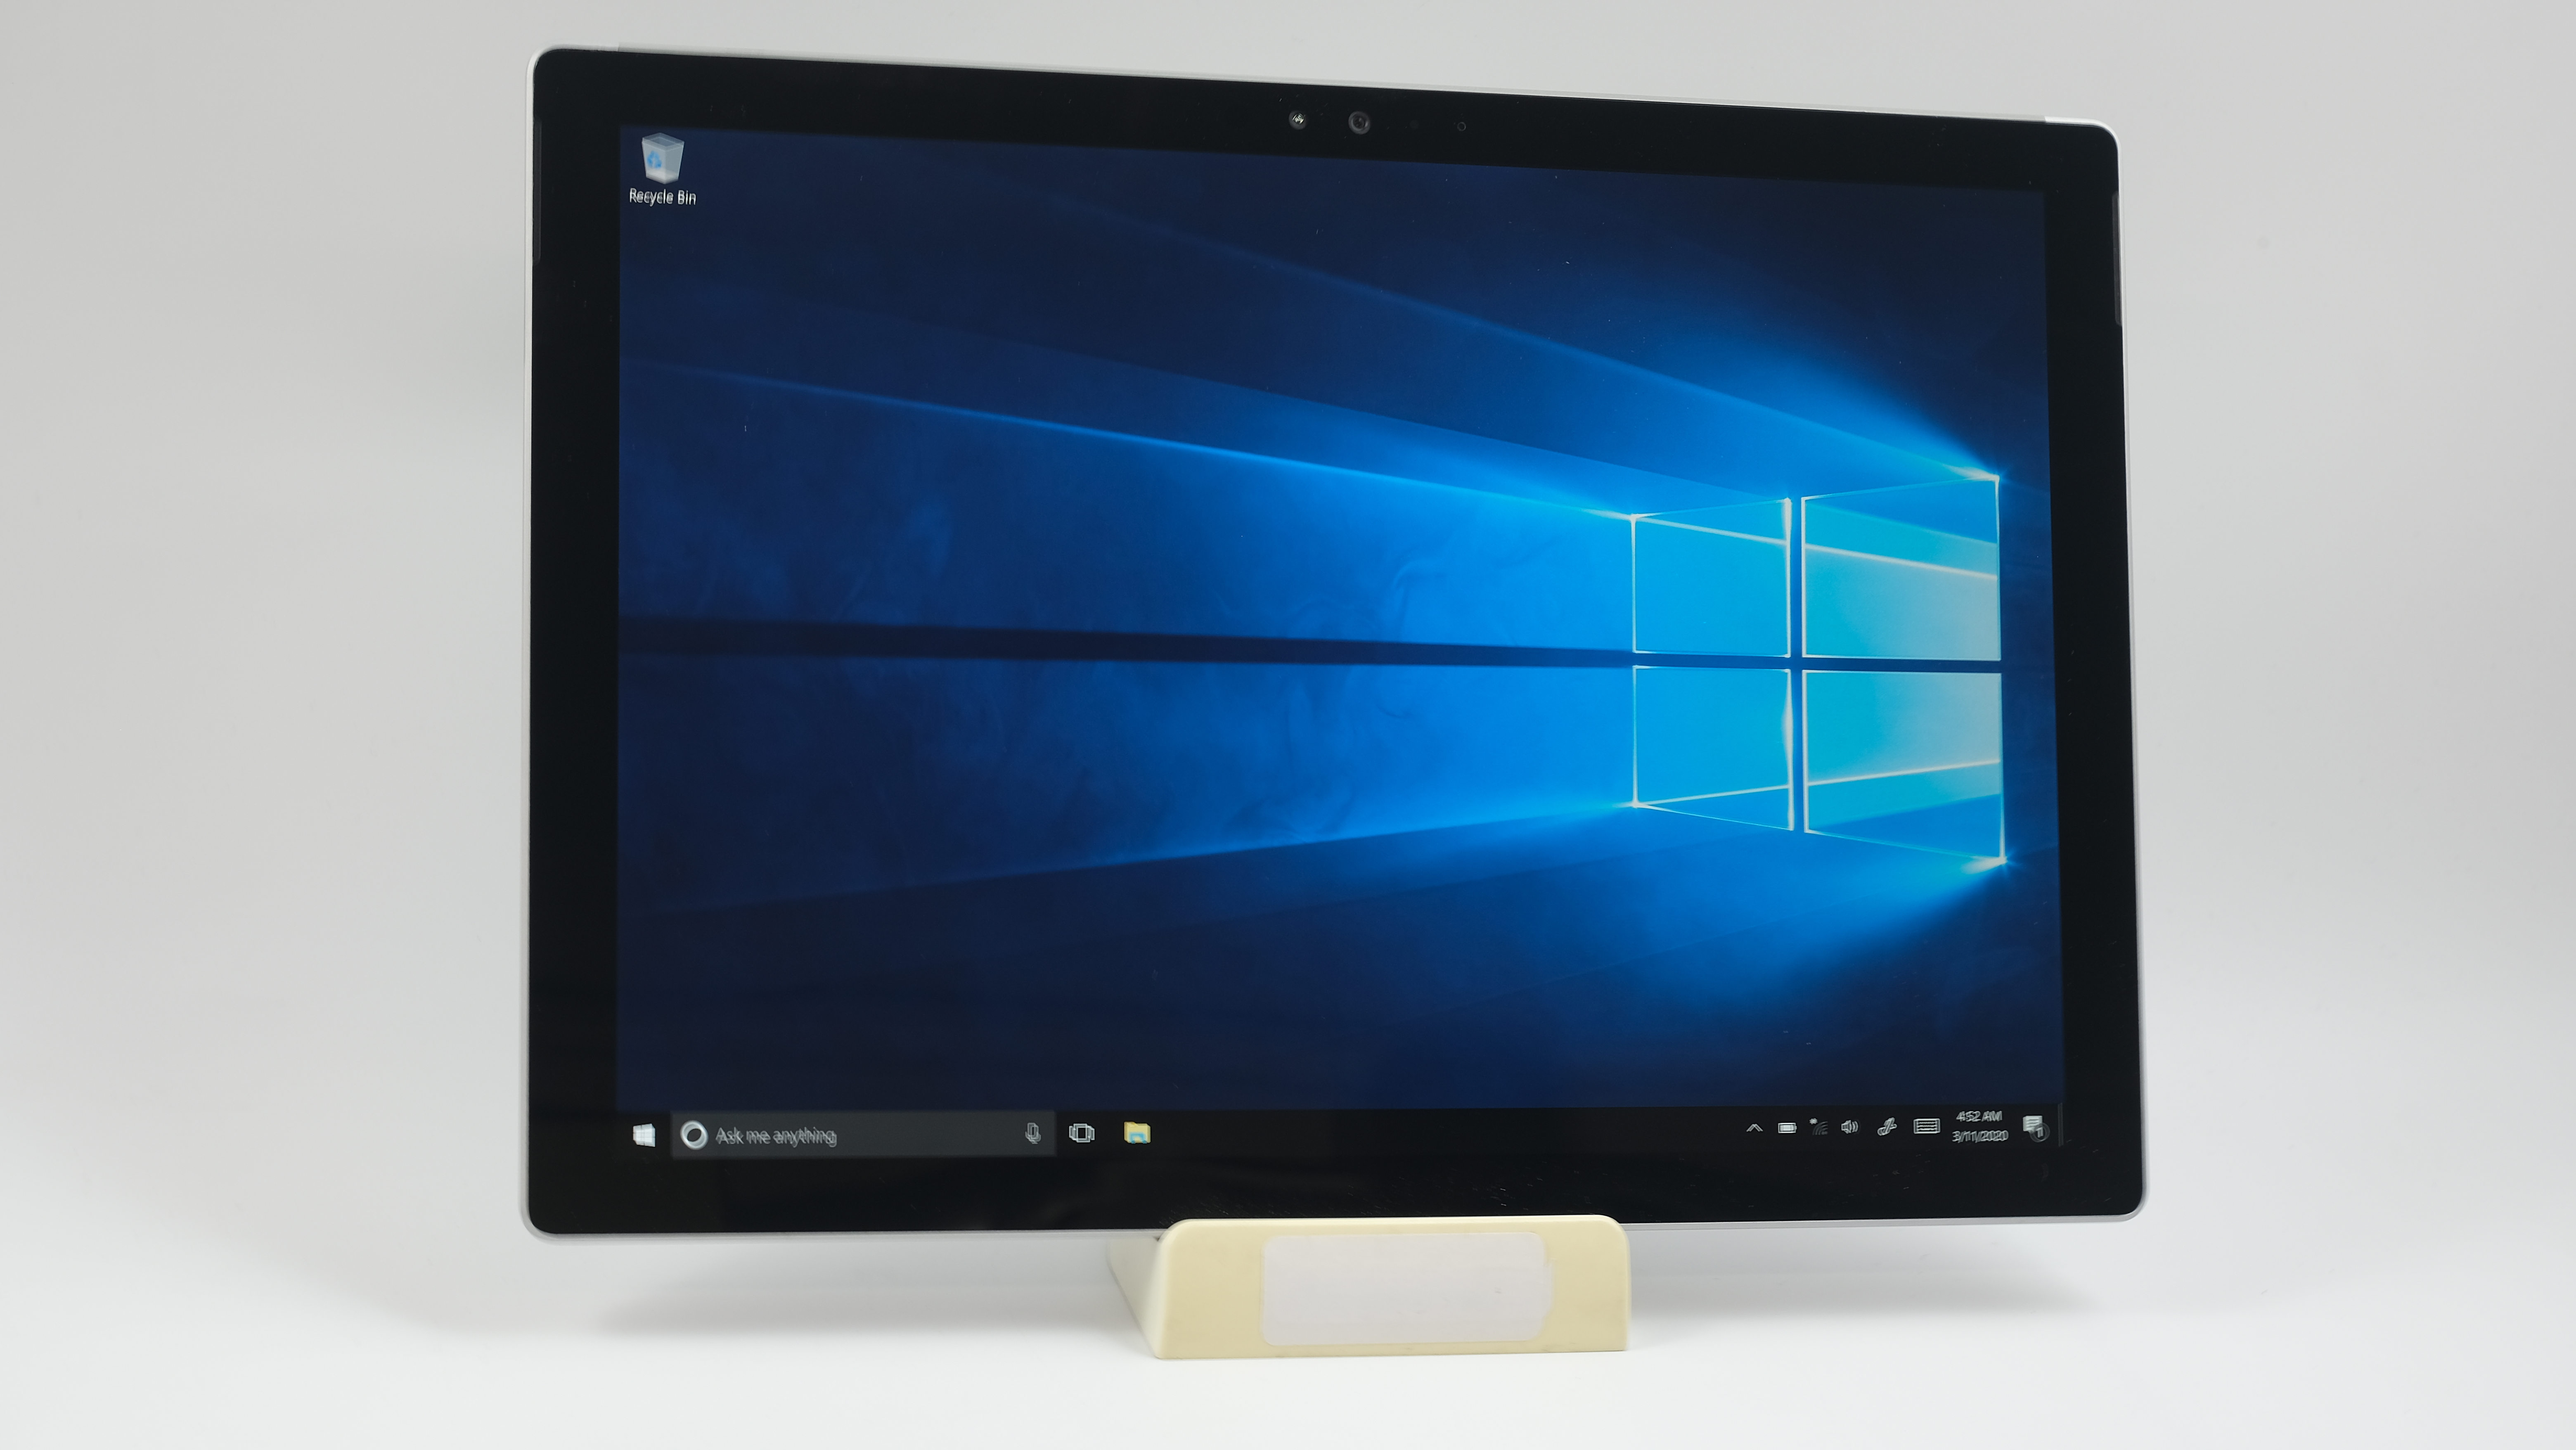 Microsoft Surface Pro 5 1796 12.3